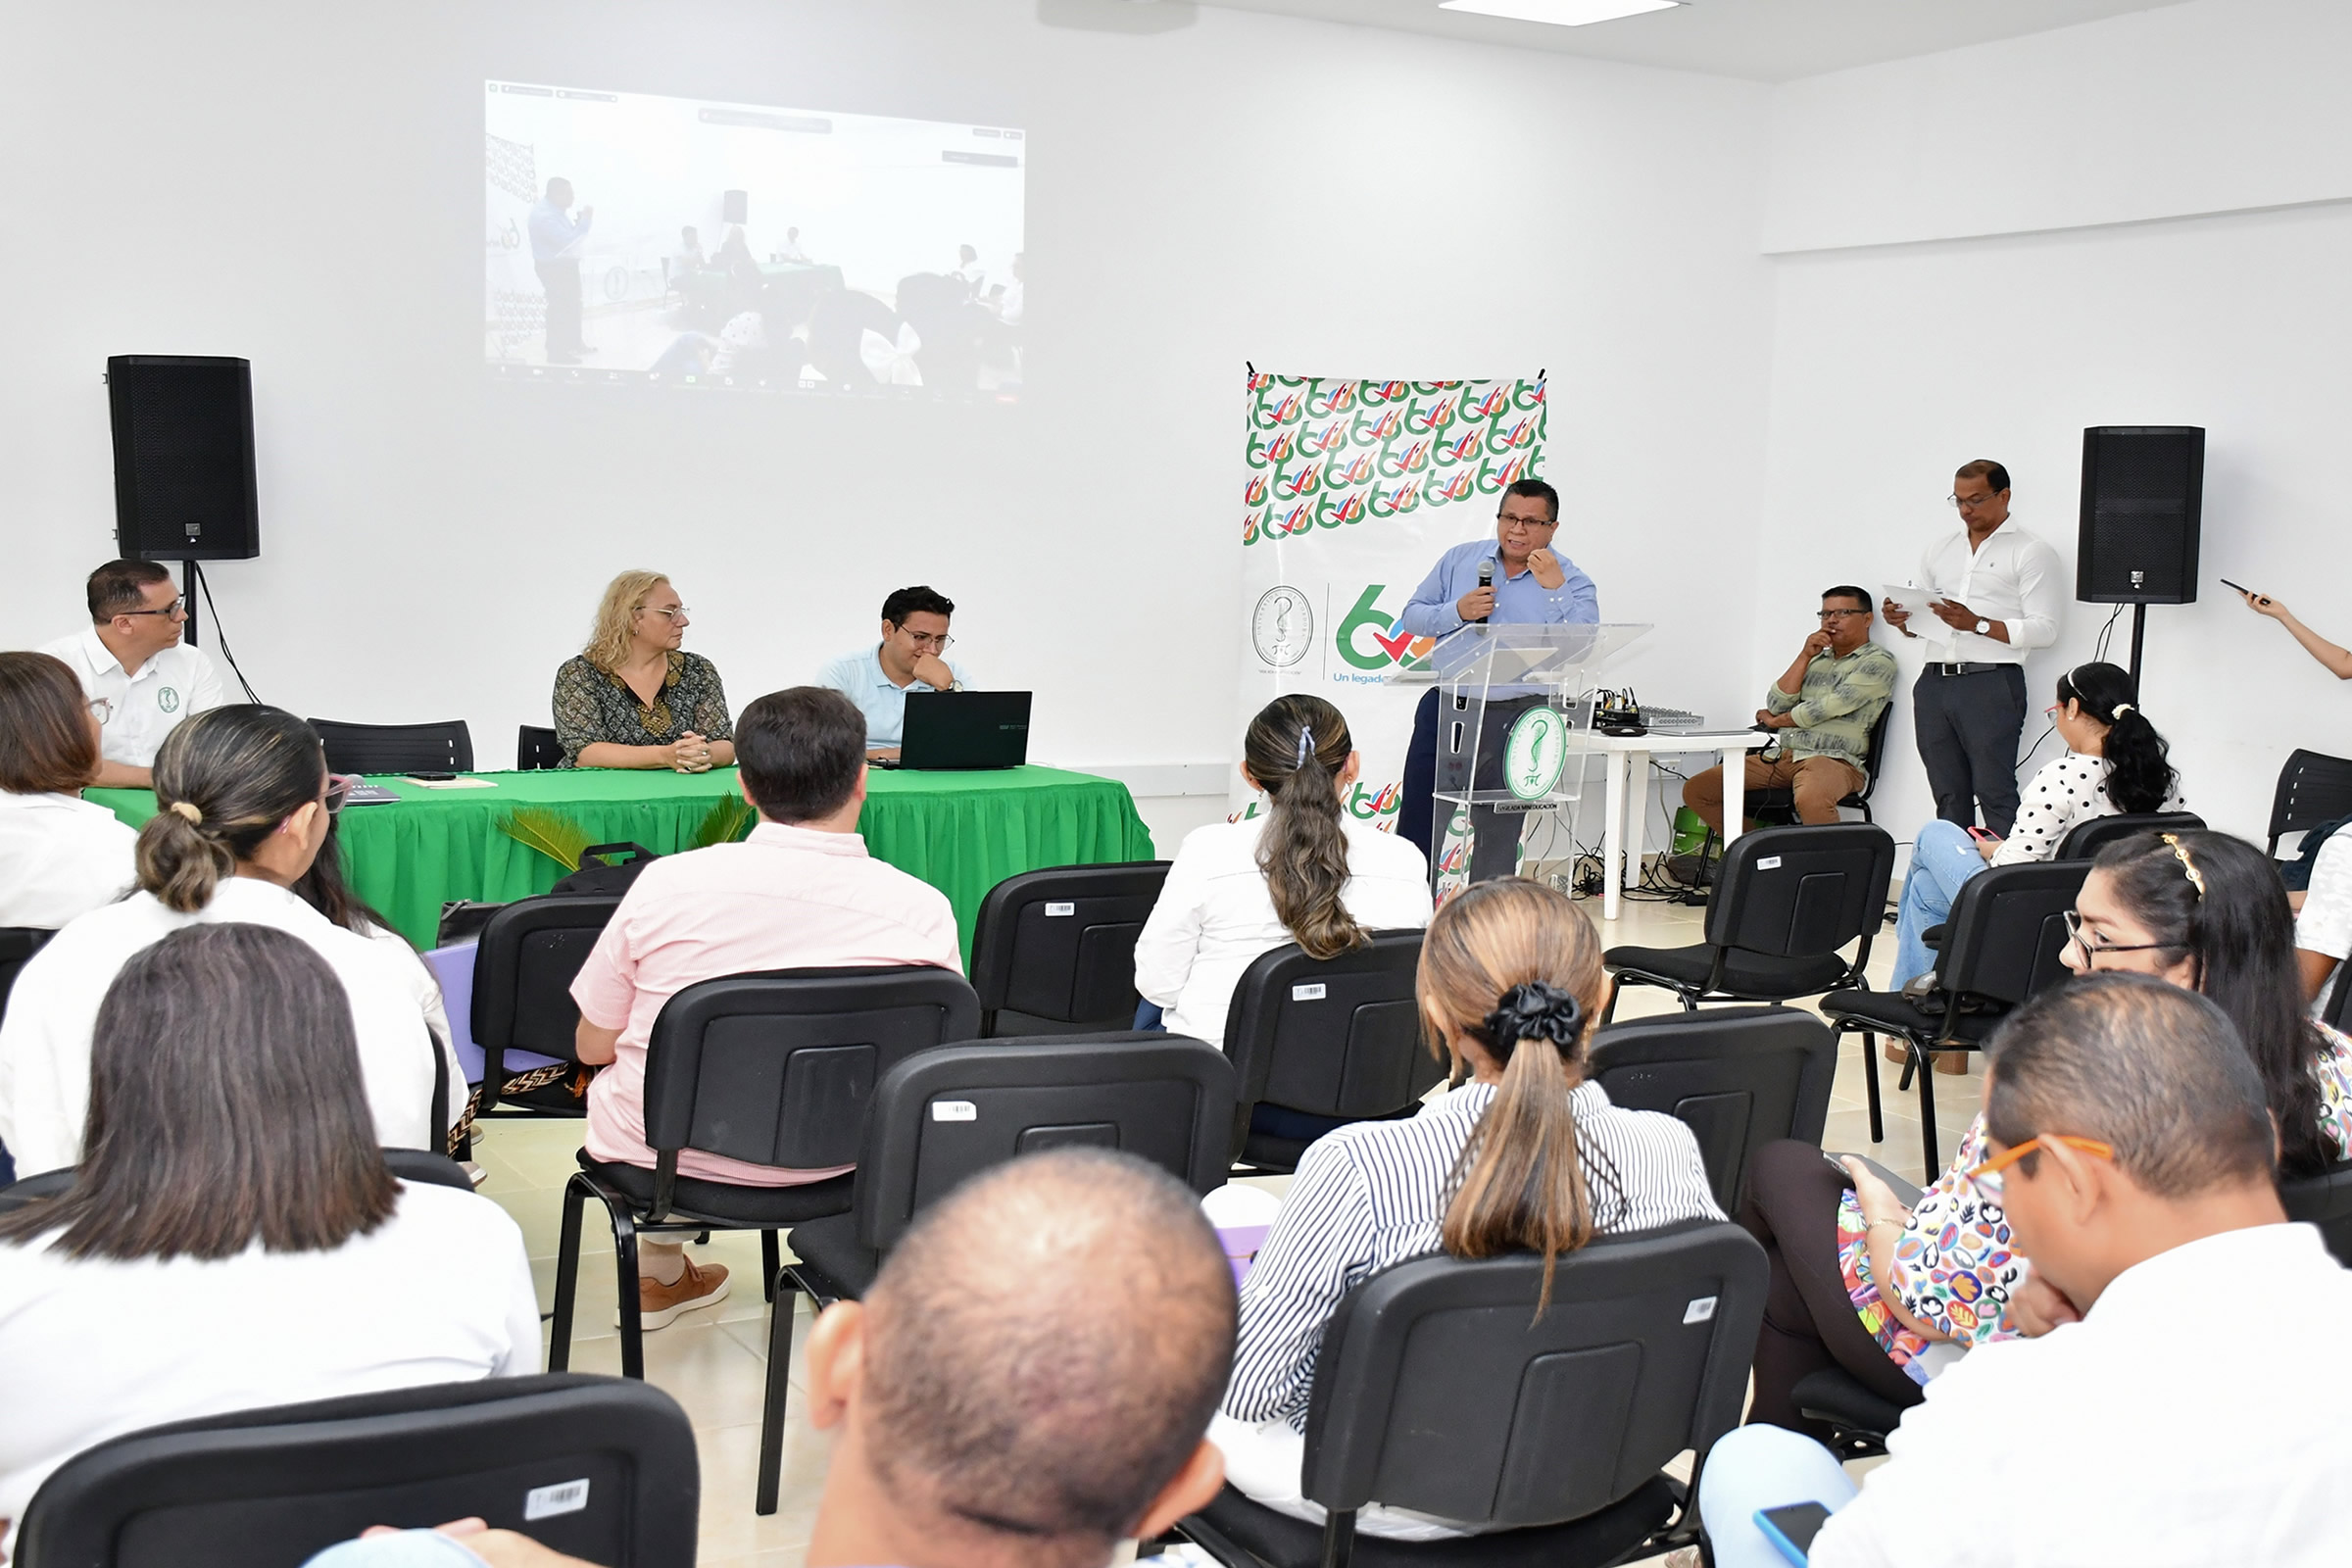 La apertura de la Jornada de Precongreso se llevó a cabo de manera híbrida, desde el auditorio de ASPU en la Universidad de Córdoba, conectando a estudiantes, profesores y expertos del campo de la educación ambiental, tanto presencialmente como a través de medios virtuales.